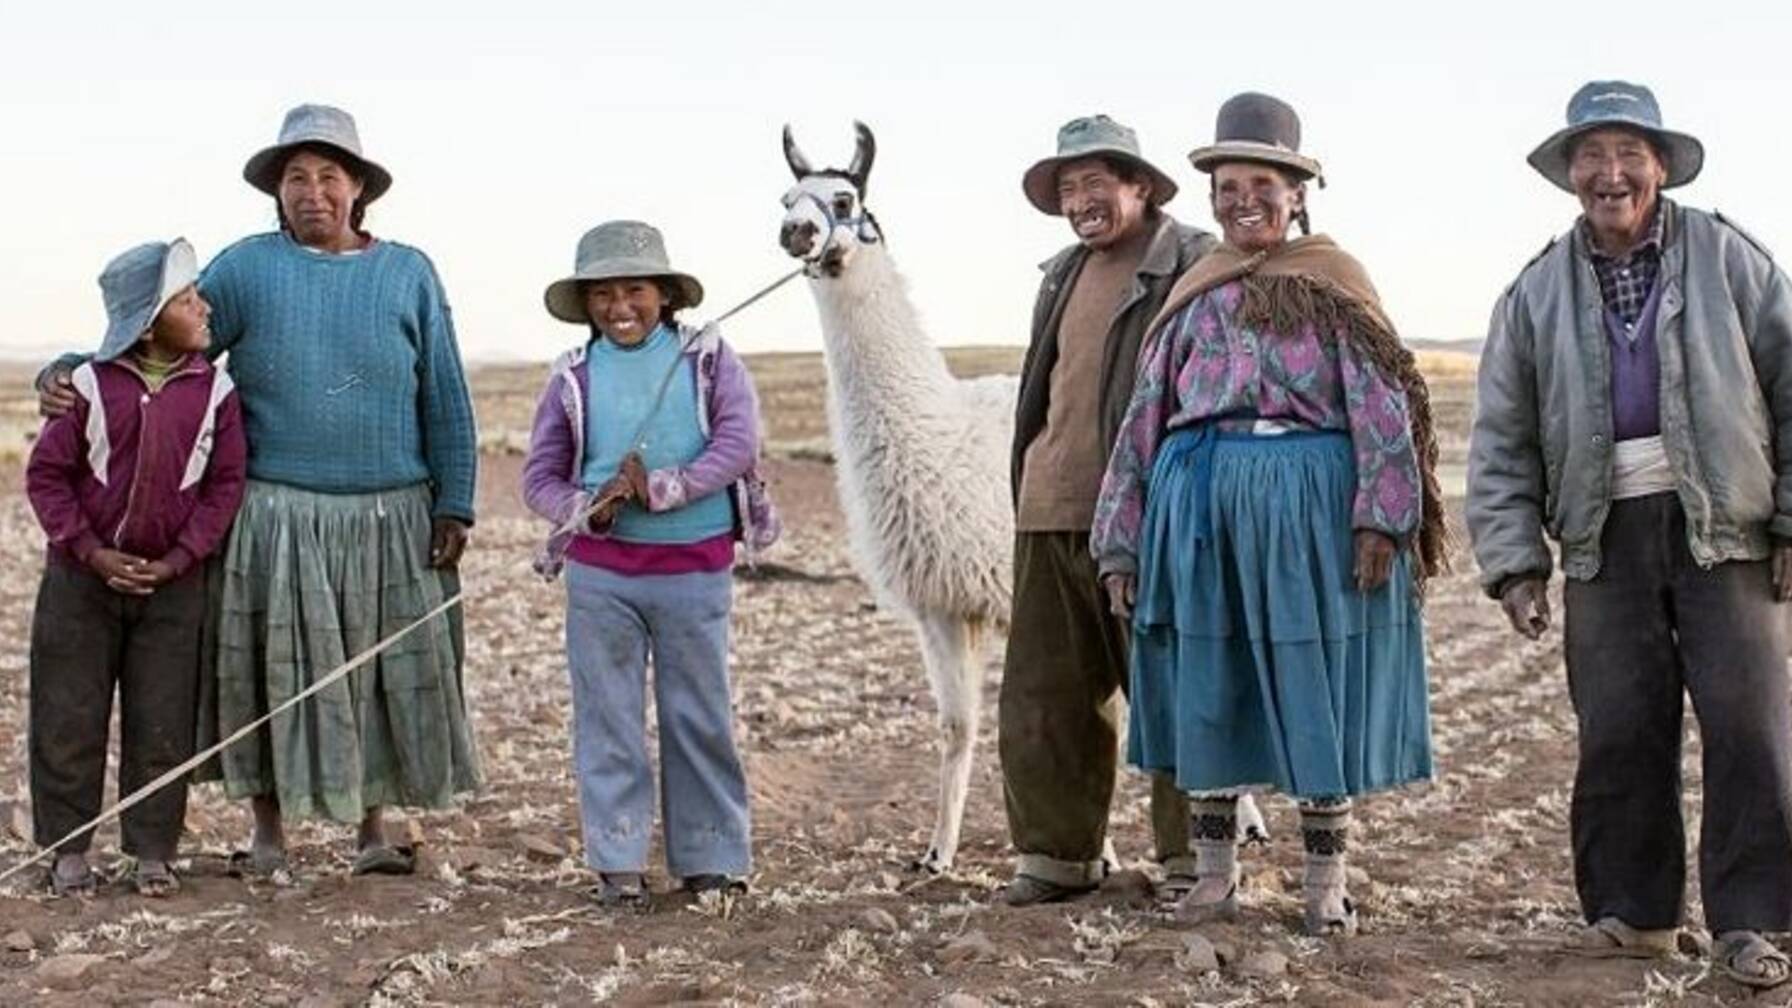 Sechsköpfige Familie in den Anden mit zwei Lamas.